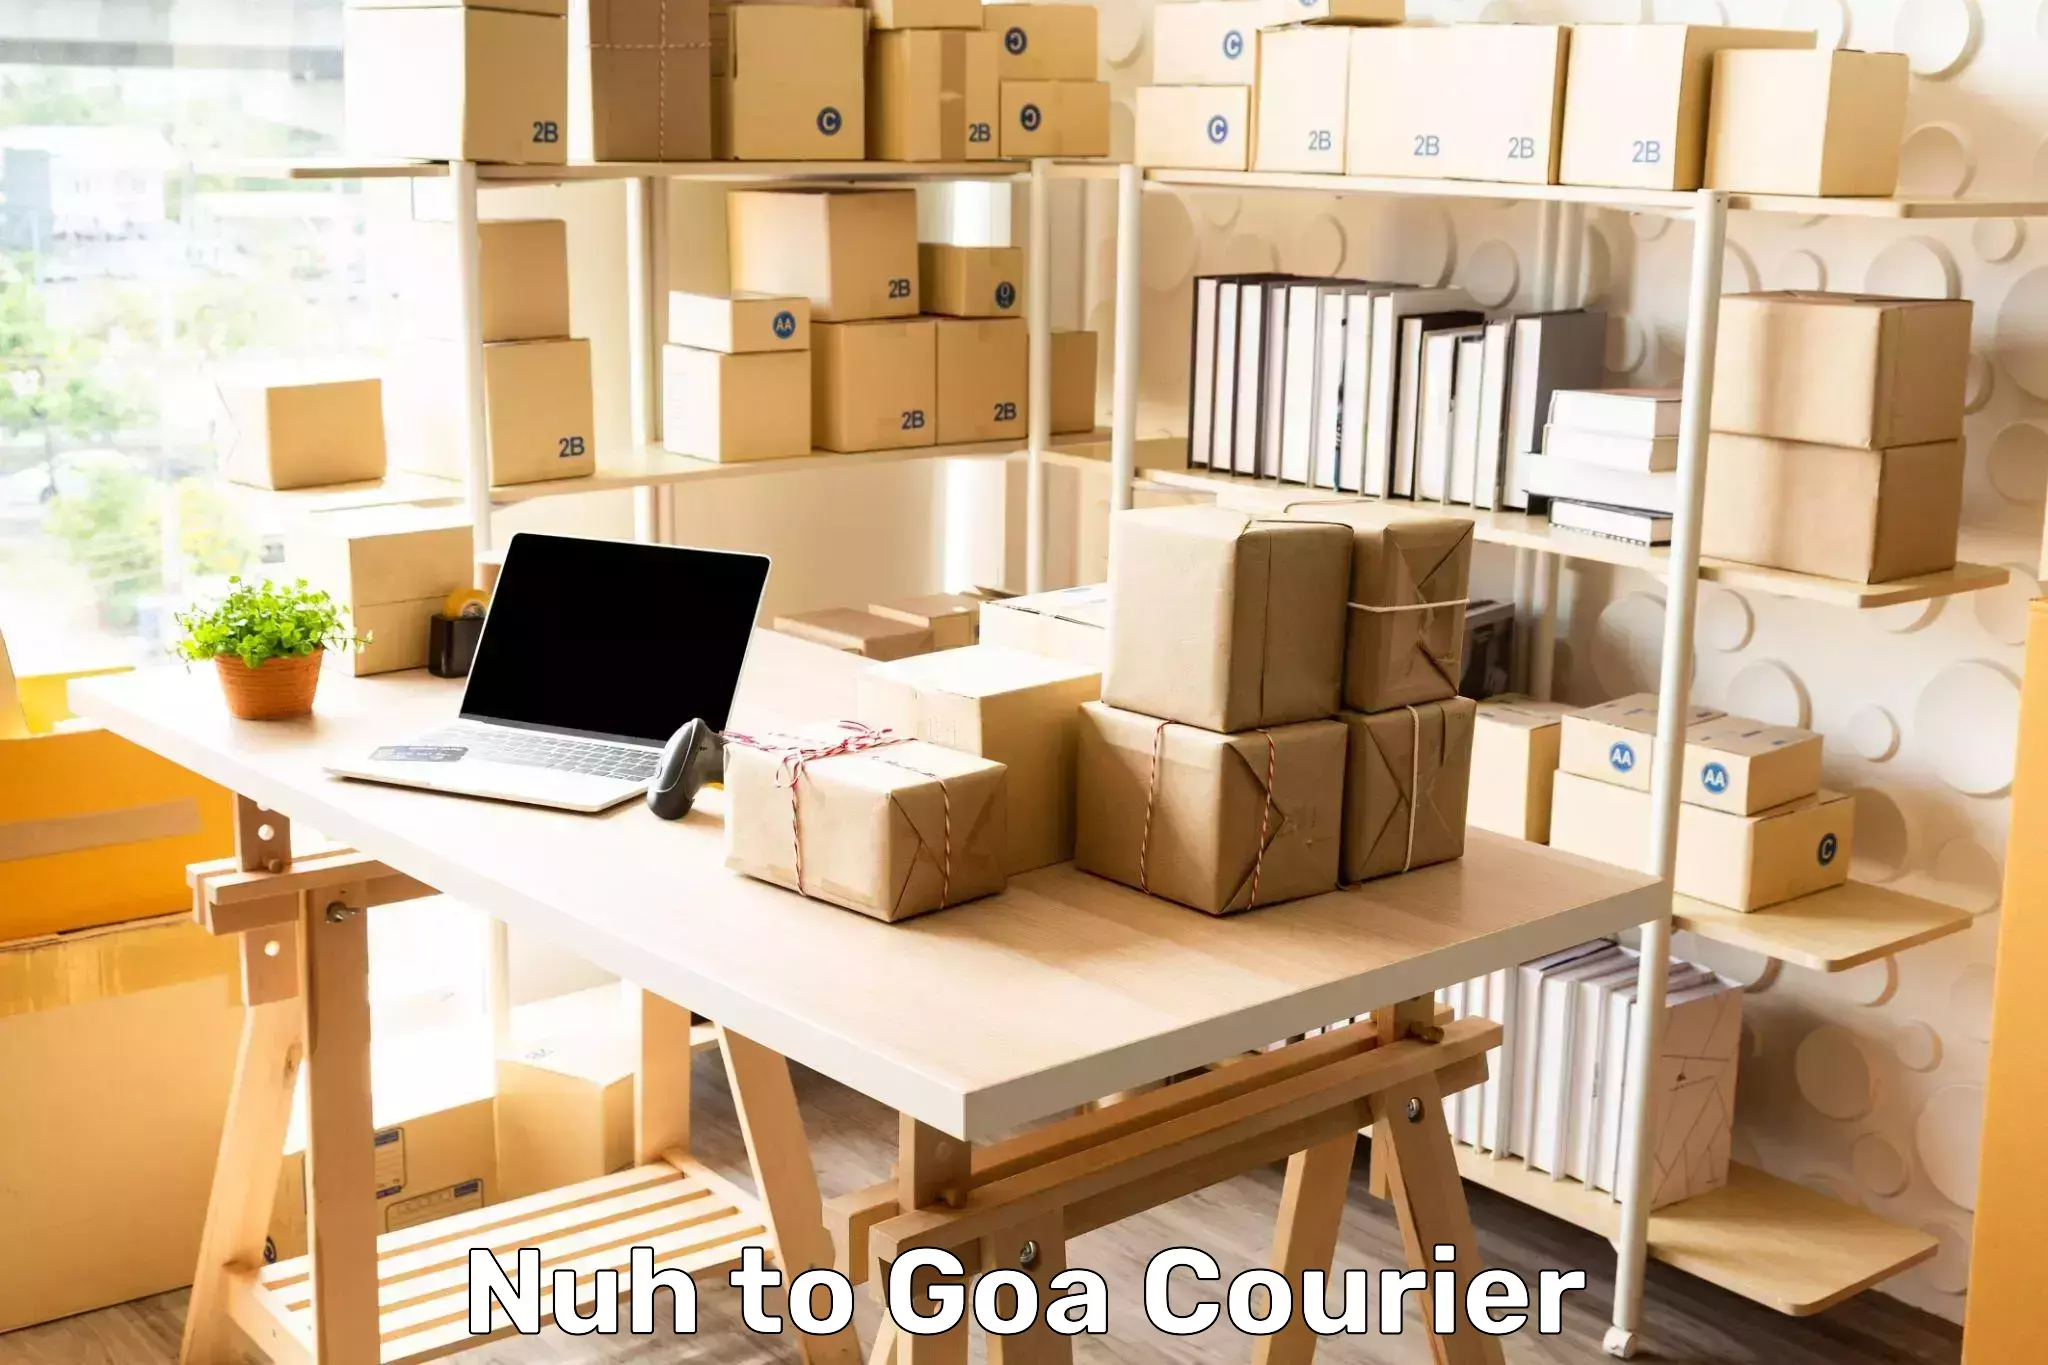 E-commerce fulfillment Nuh to South Goa